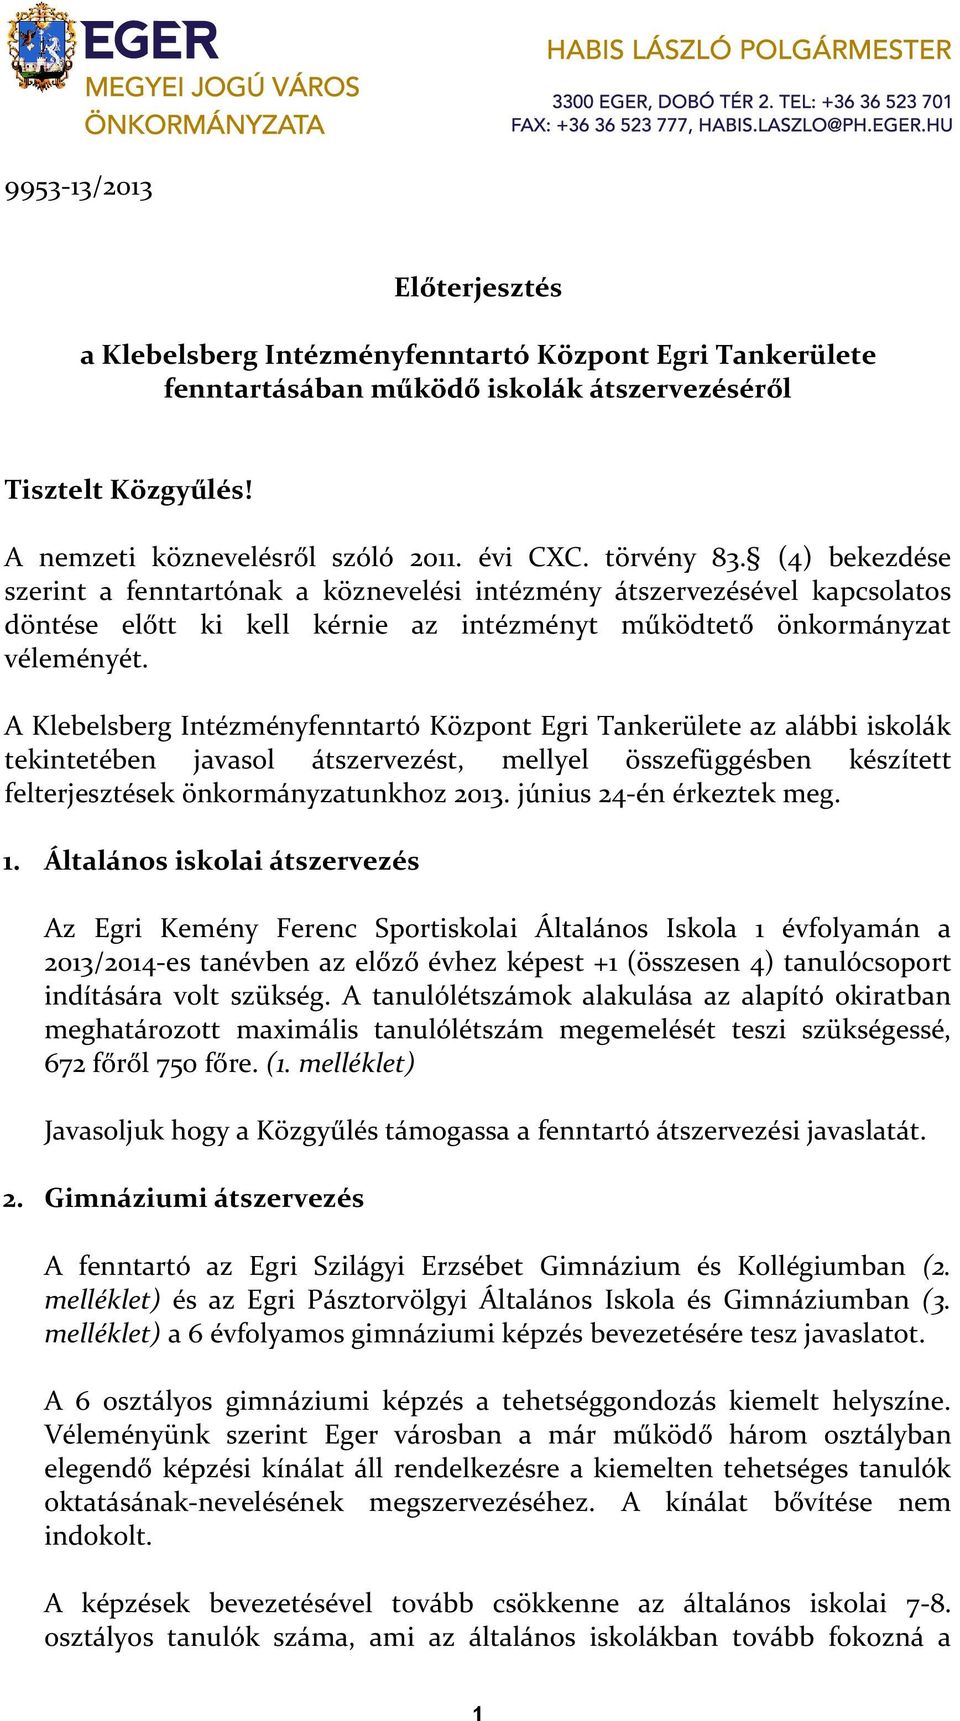 A Klebelsberg Intézményfenntartó Központ Egri Tankerülete az alábbi iskolák tekintetében javasol átszervezést, mellyel összefüggésben készített felterjesztések önkormányzatunkhoz 2013.